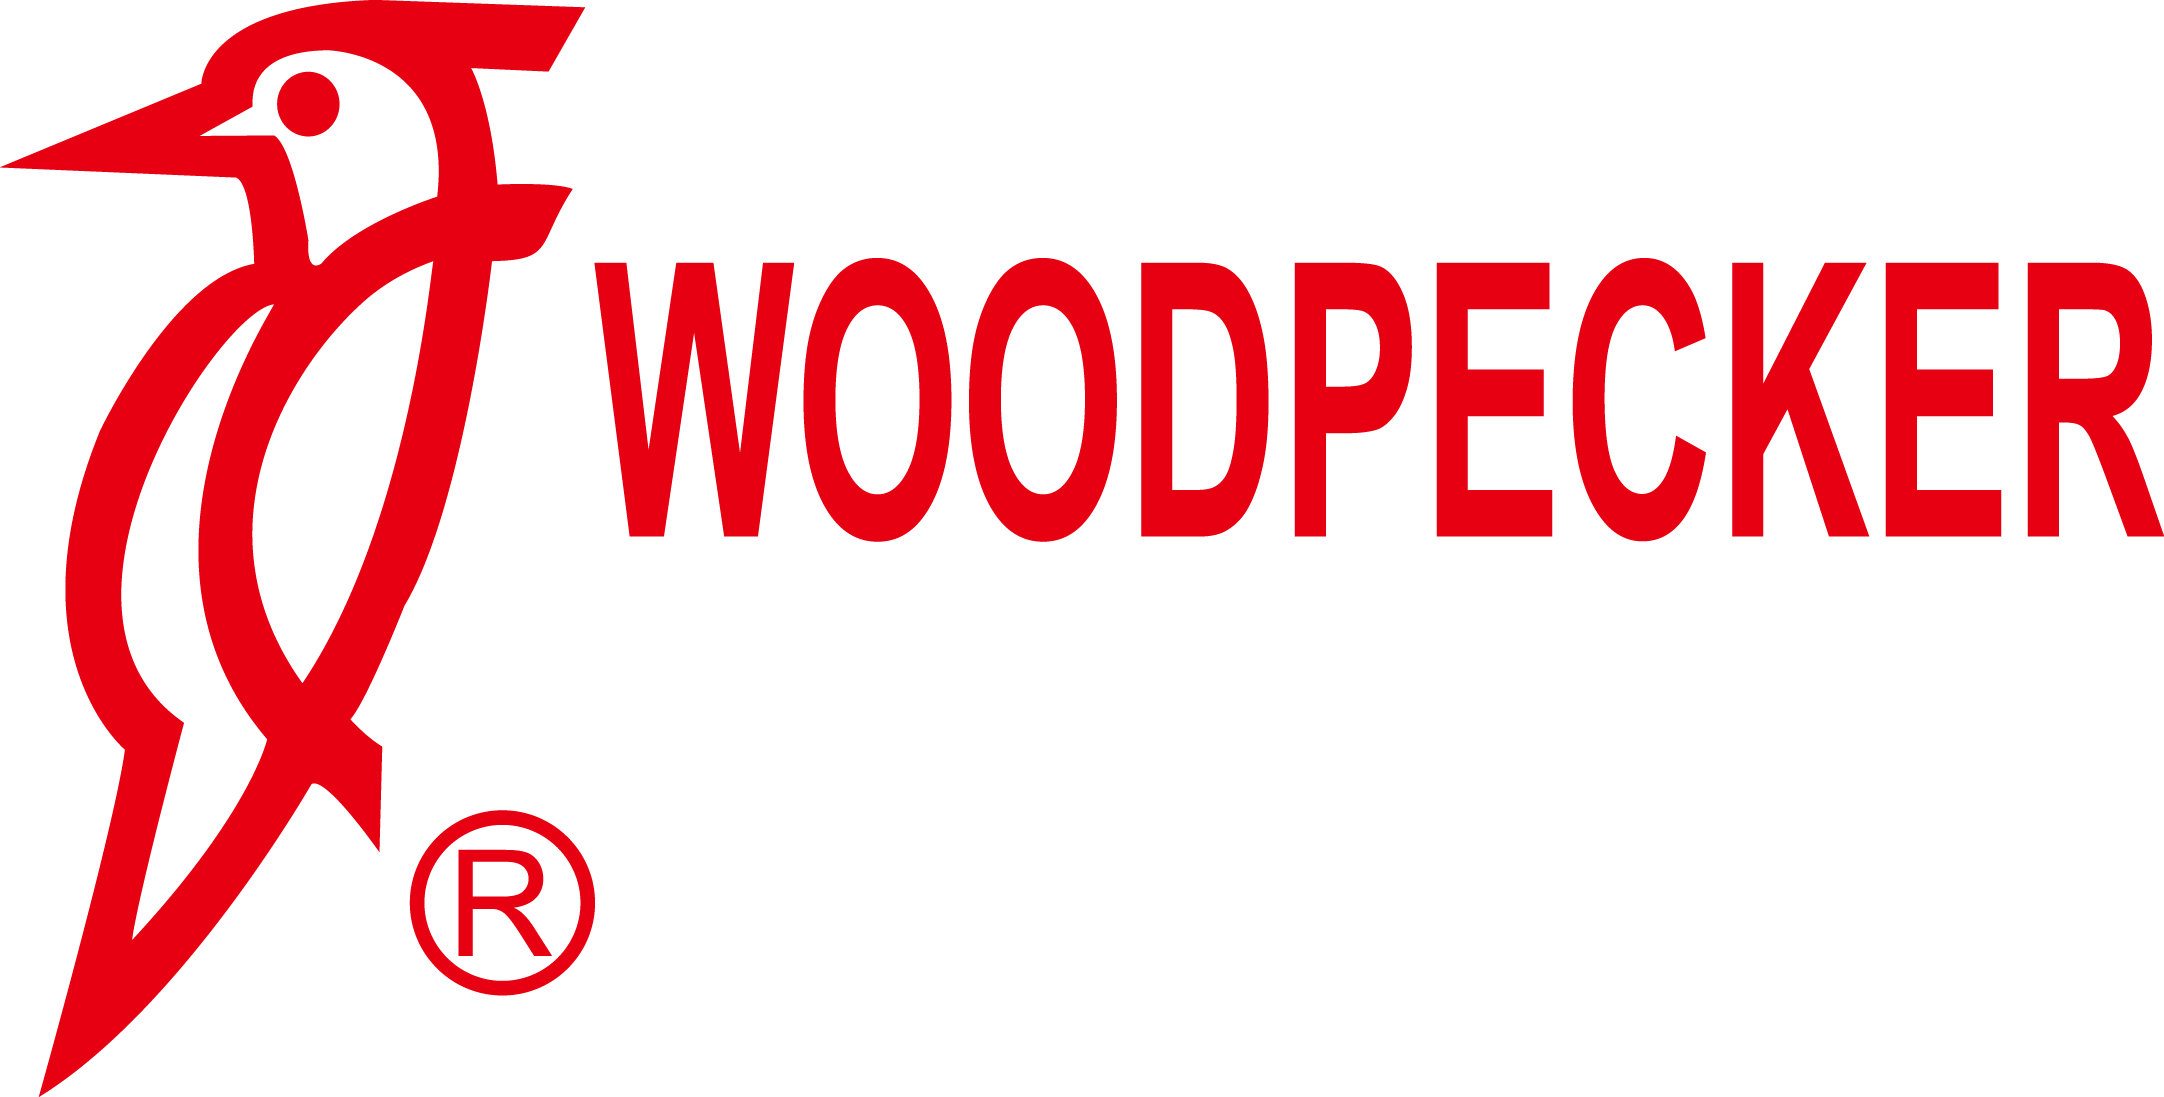 woodpeacker